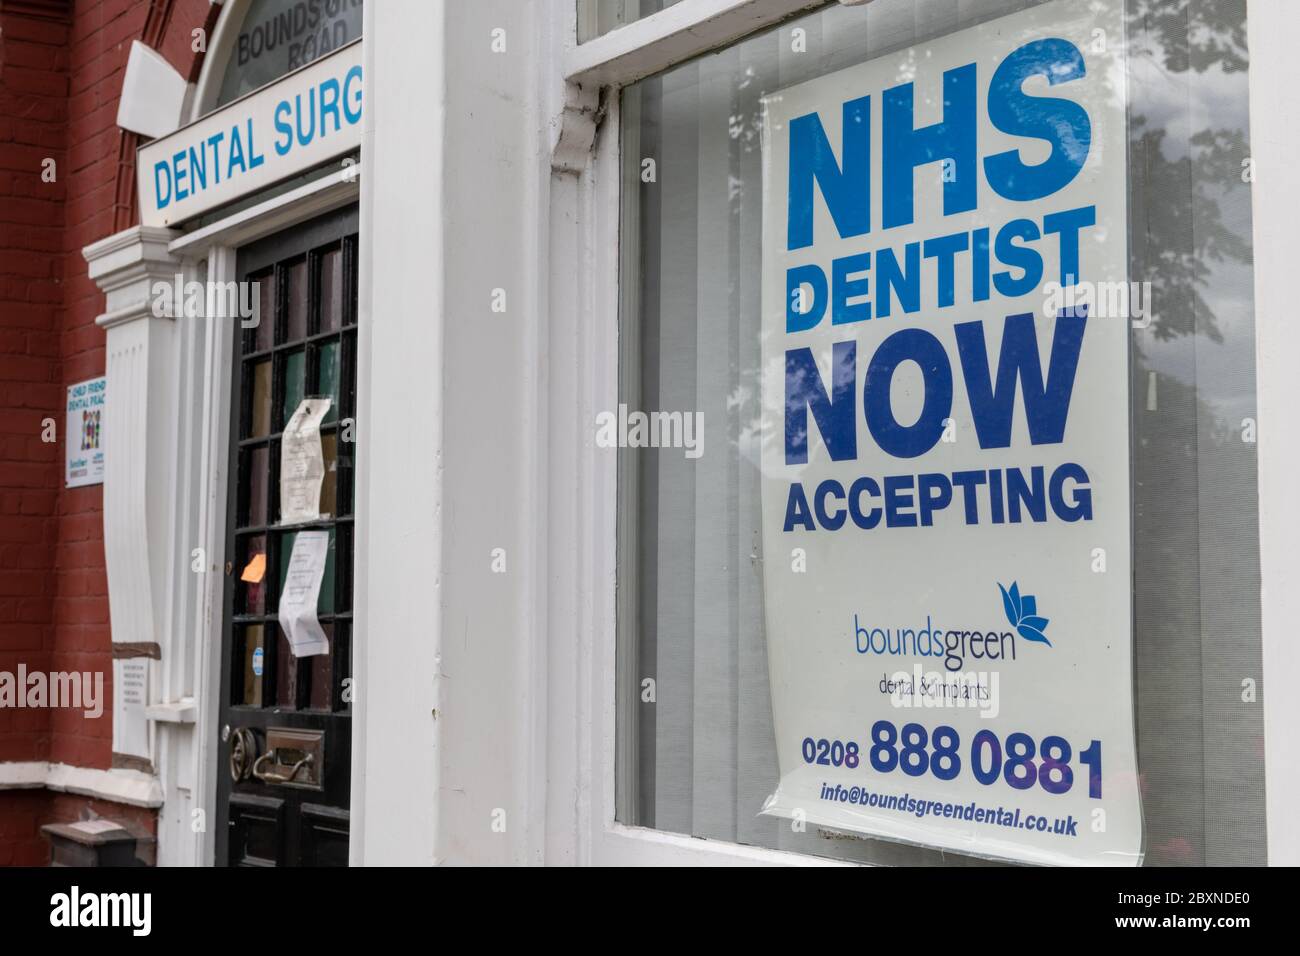 Affiche dans la fenêtre d'une pratique dentaire accueillant les patients du NHS. Banque D'Images